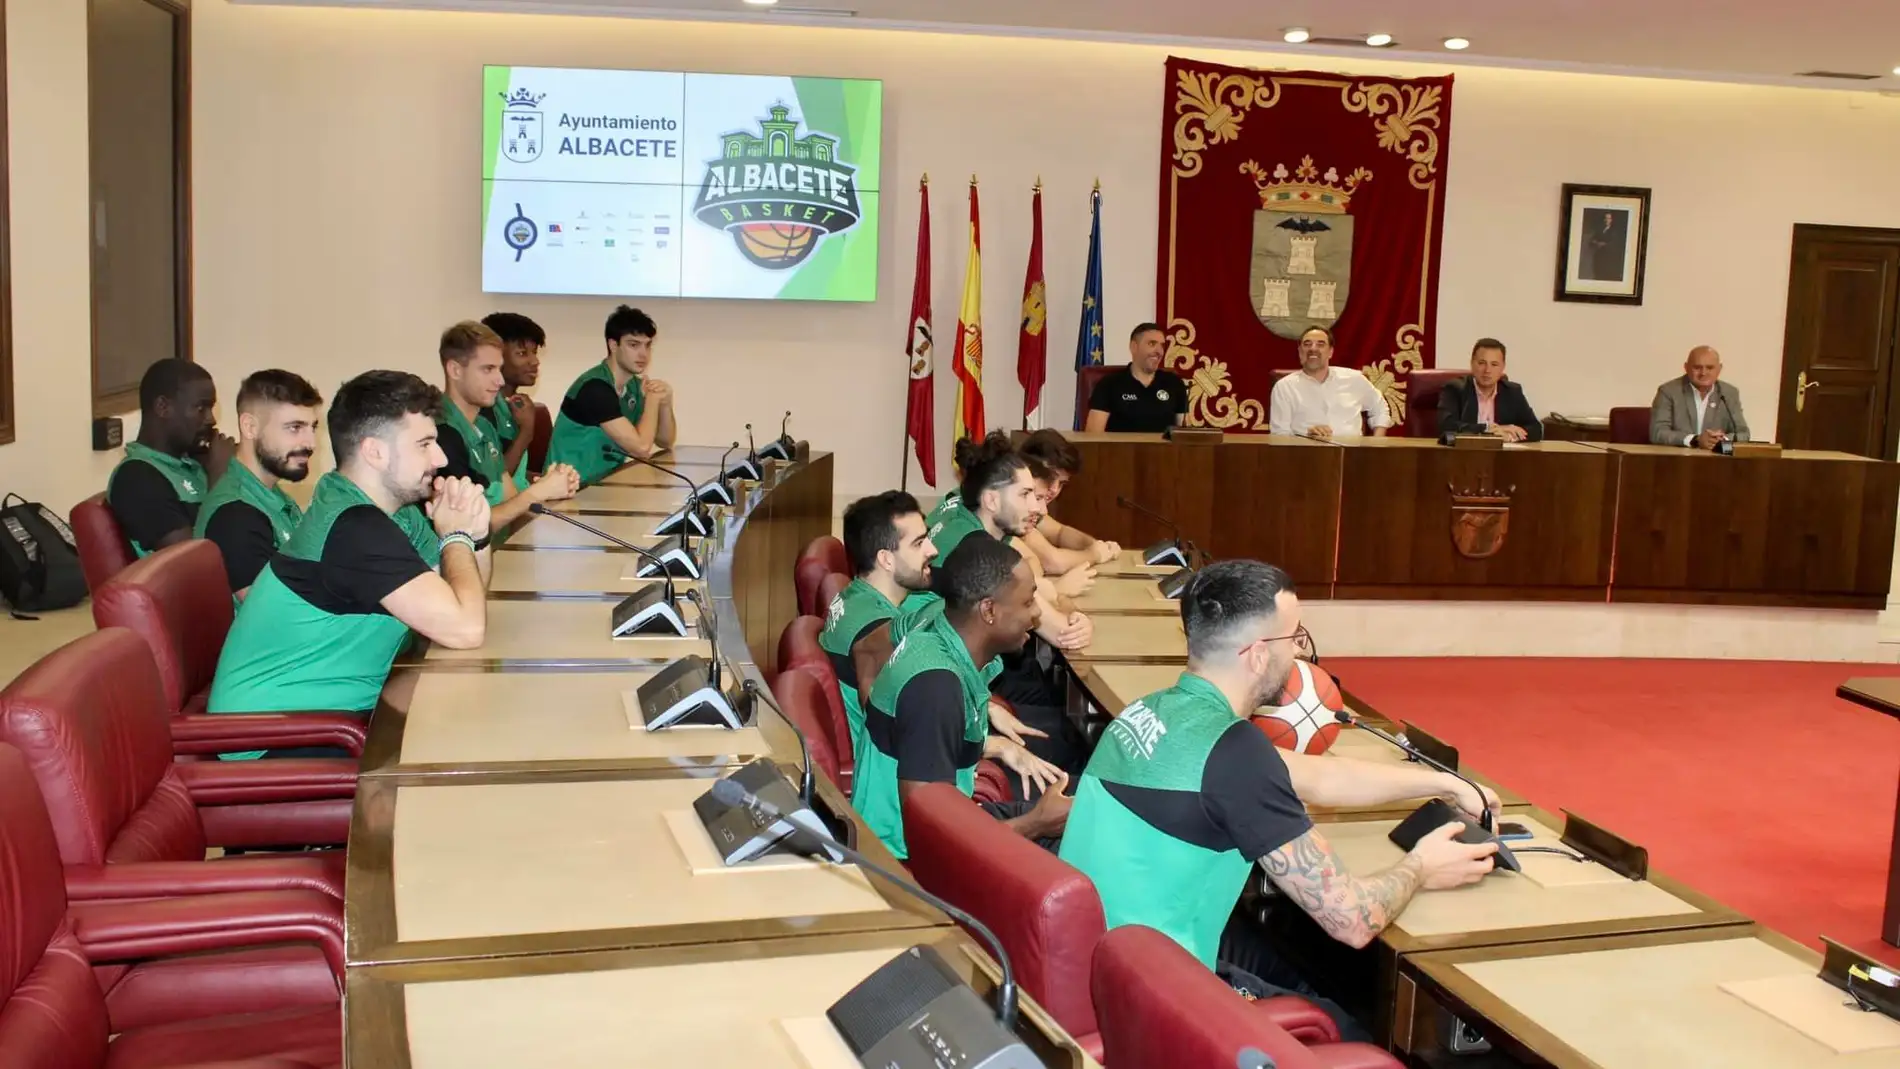 El Ayuntamiento aportará 30.000 euros al Albacete Basket como apoyo al deporte base